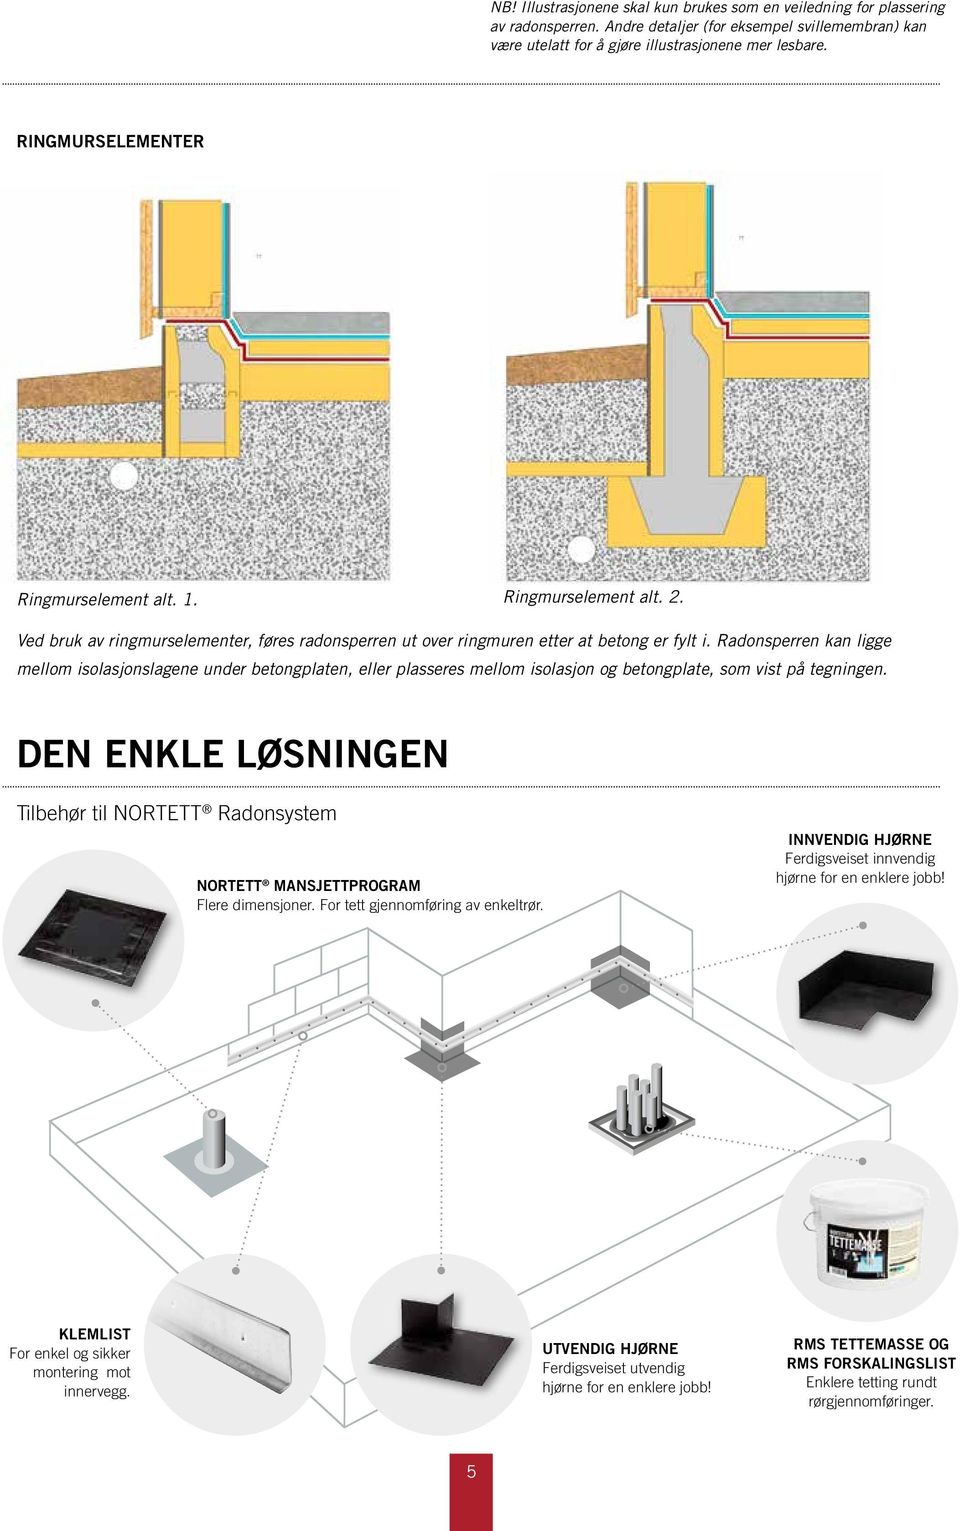 Radonsperren kan ligge mellom isolasjonslagene under betongplaten, eller plasseres mellom isolasjon og betongplate, som vist på tegningen.